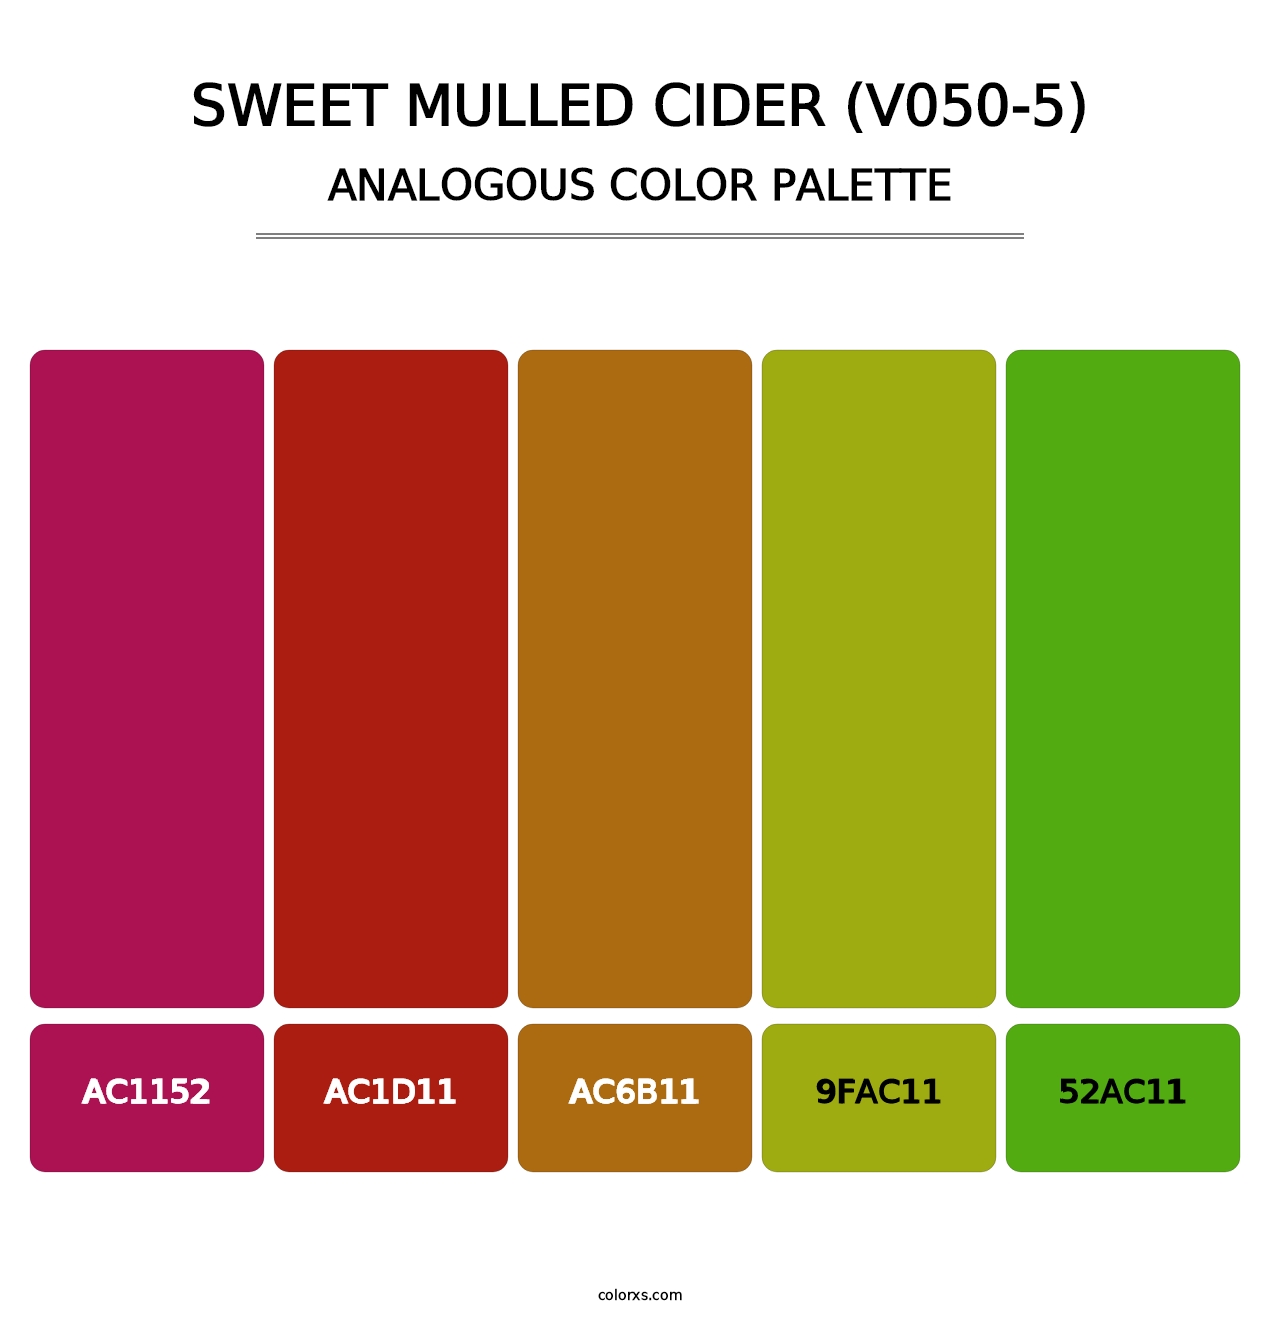 Sweet Mulled Cider (V050-5) - Analogous Color Palette